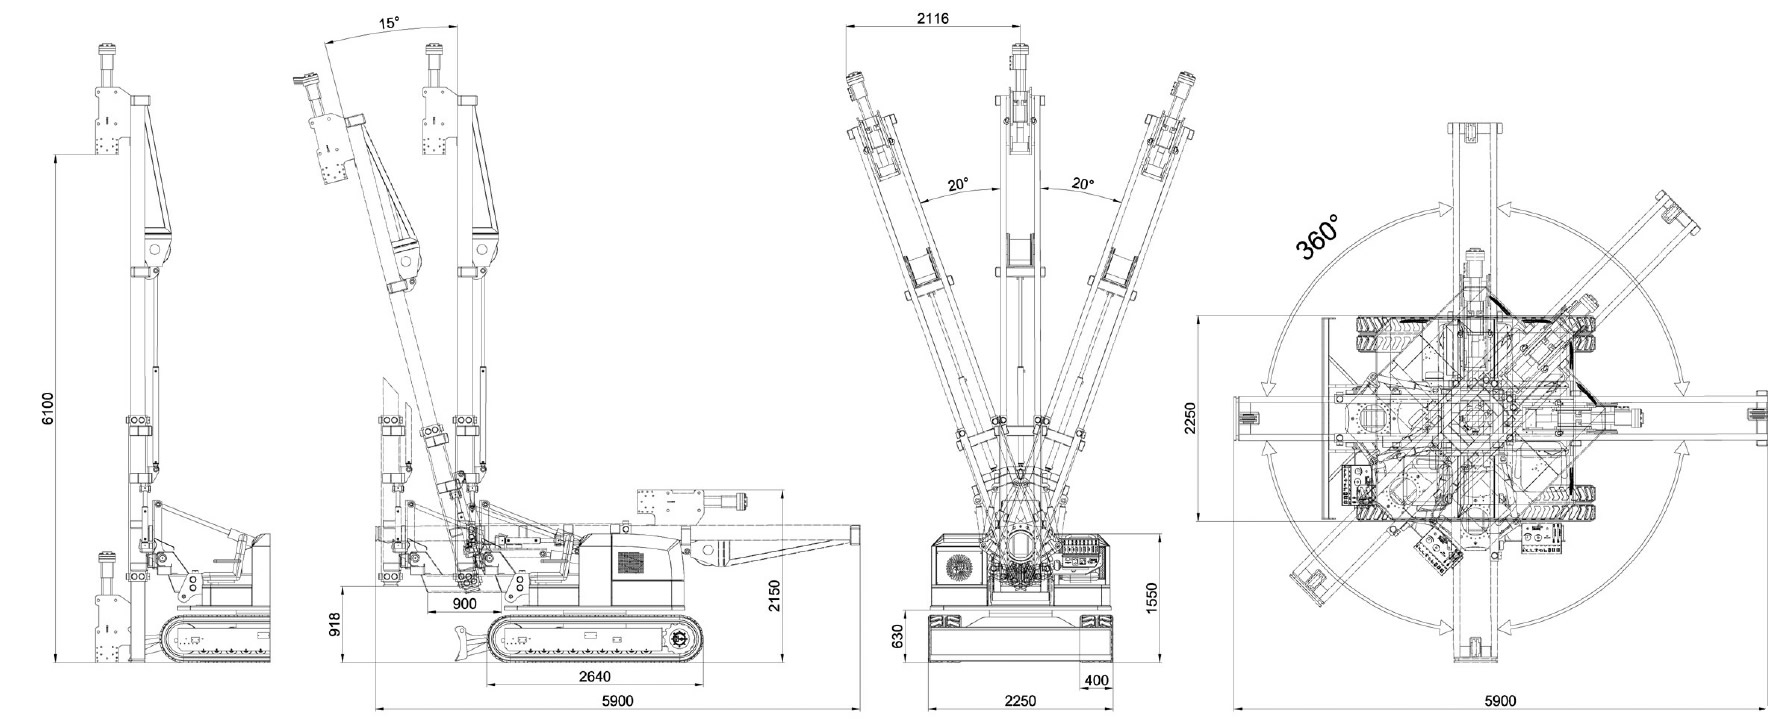 Maße und technische Zeichnung eines Rammgeräts des Modells 900